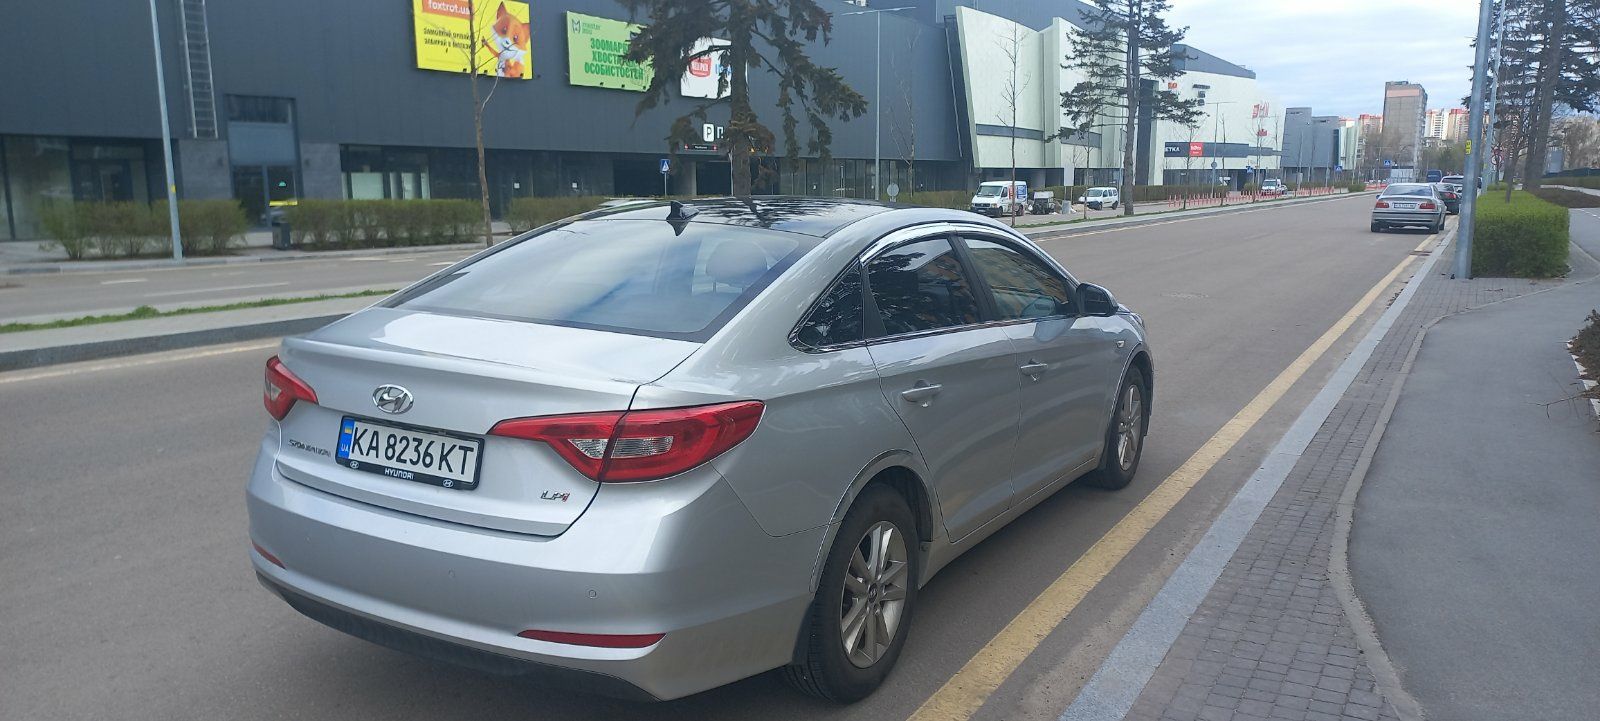 Hyundai Sonata, 2015 г.в., 2.0і, АКПП